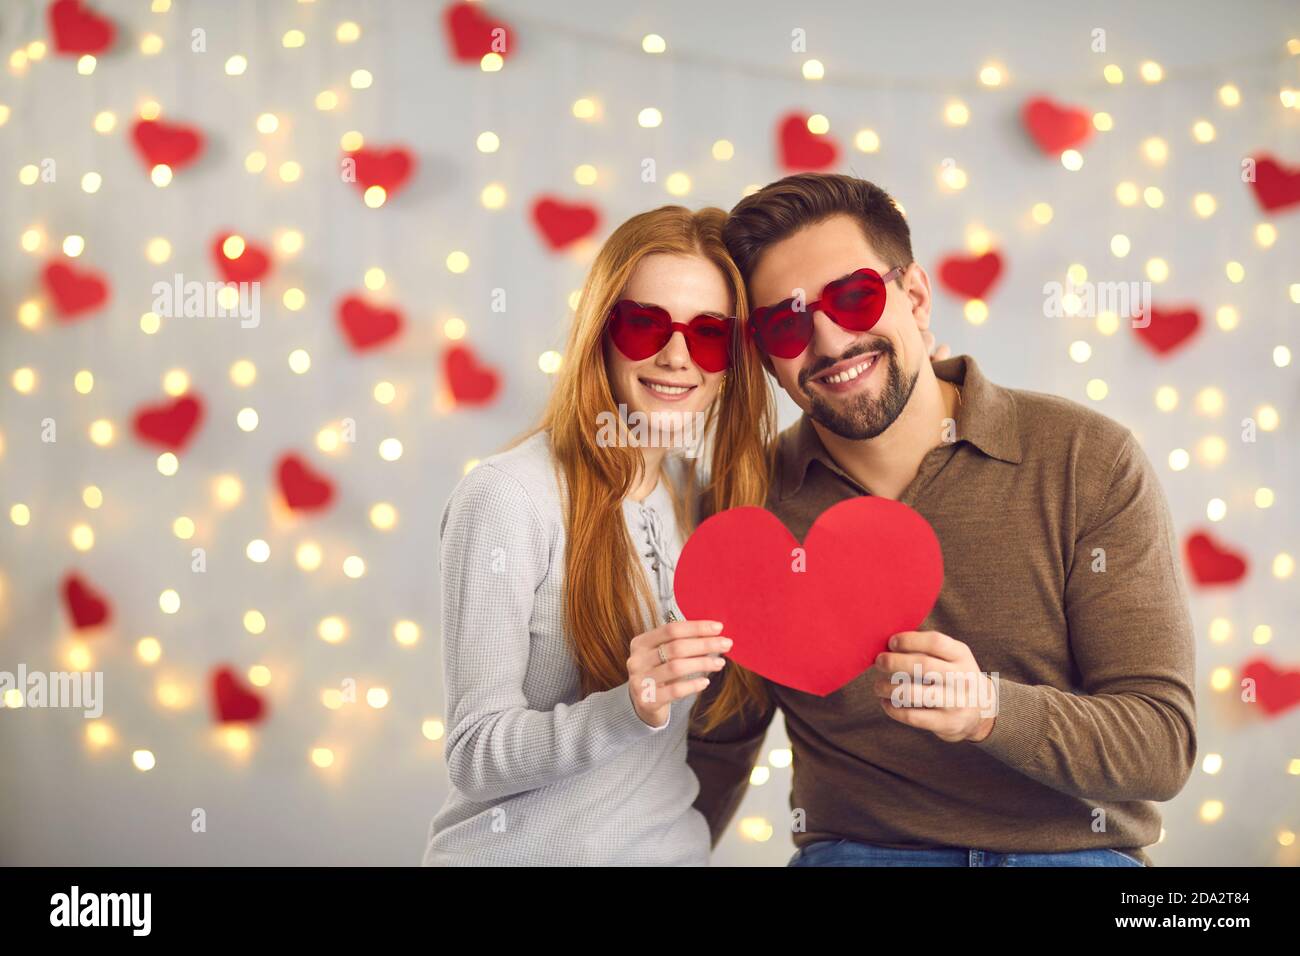 Jeune heureux amoureux couple en forme de coeur verres debout et tenir le gros coeur rouge dans les mains Banque D'Images